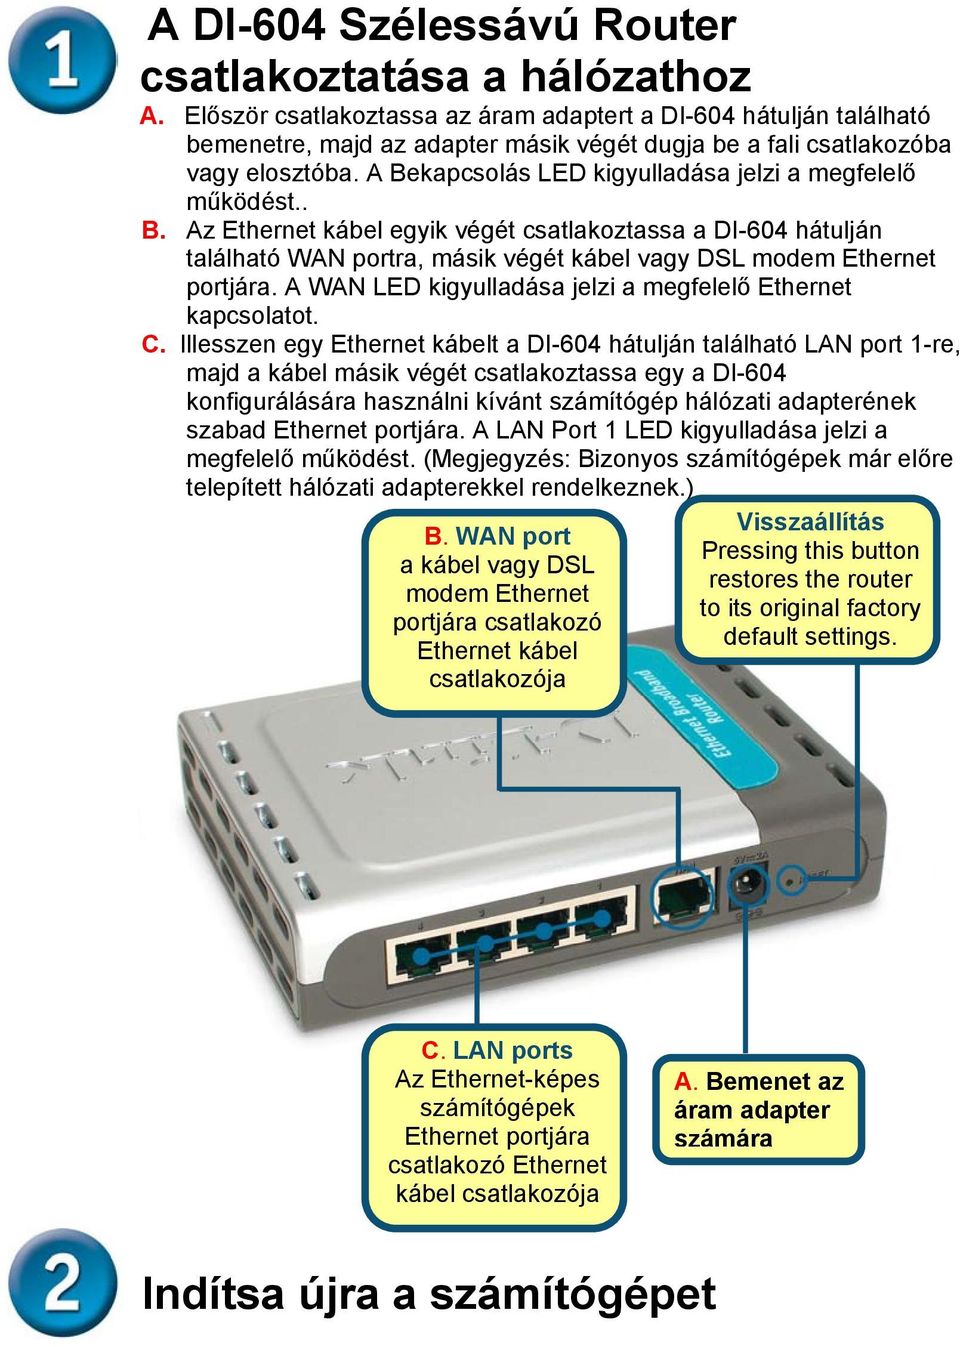 A Bekapcsolás LED kigyulladása jelzi a megfelelő működést.. B. Az Ethernet kábel egyik végét csatlakoztassa a DI-604 hátulján található WAN portra, másik végét kábel vagy DSL modem Ethernet portjára.